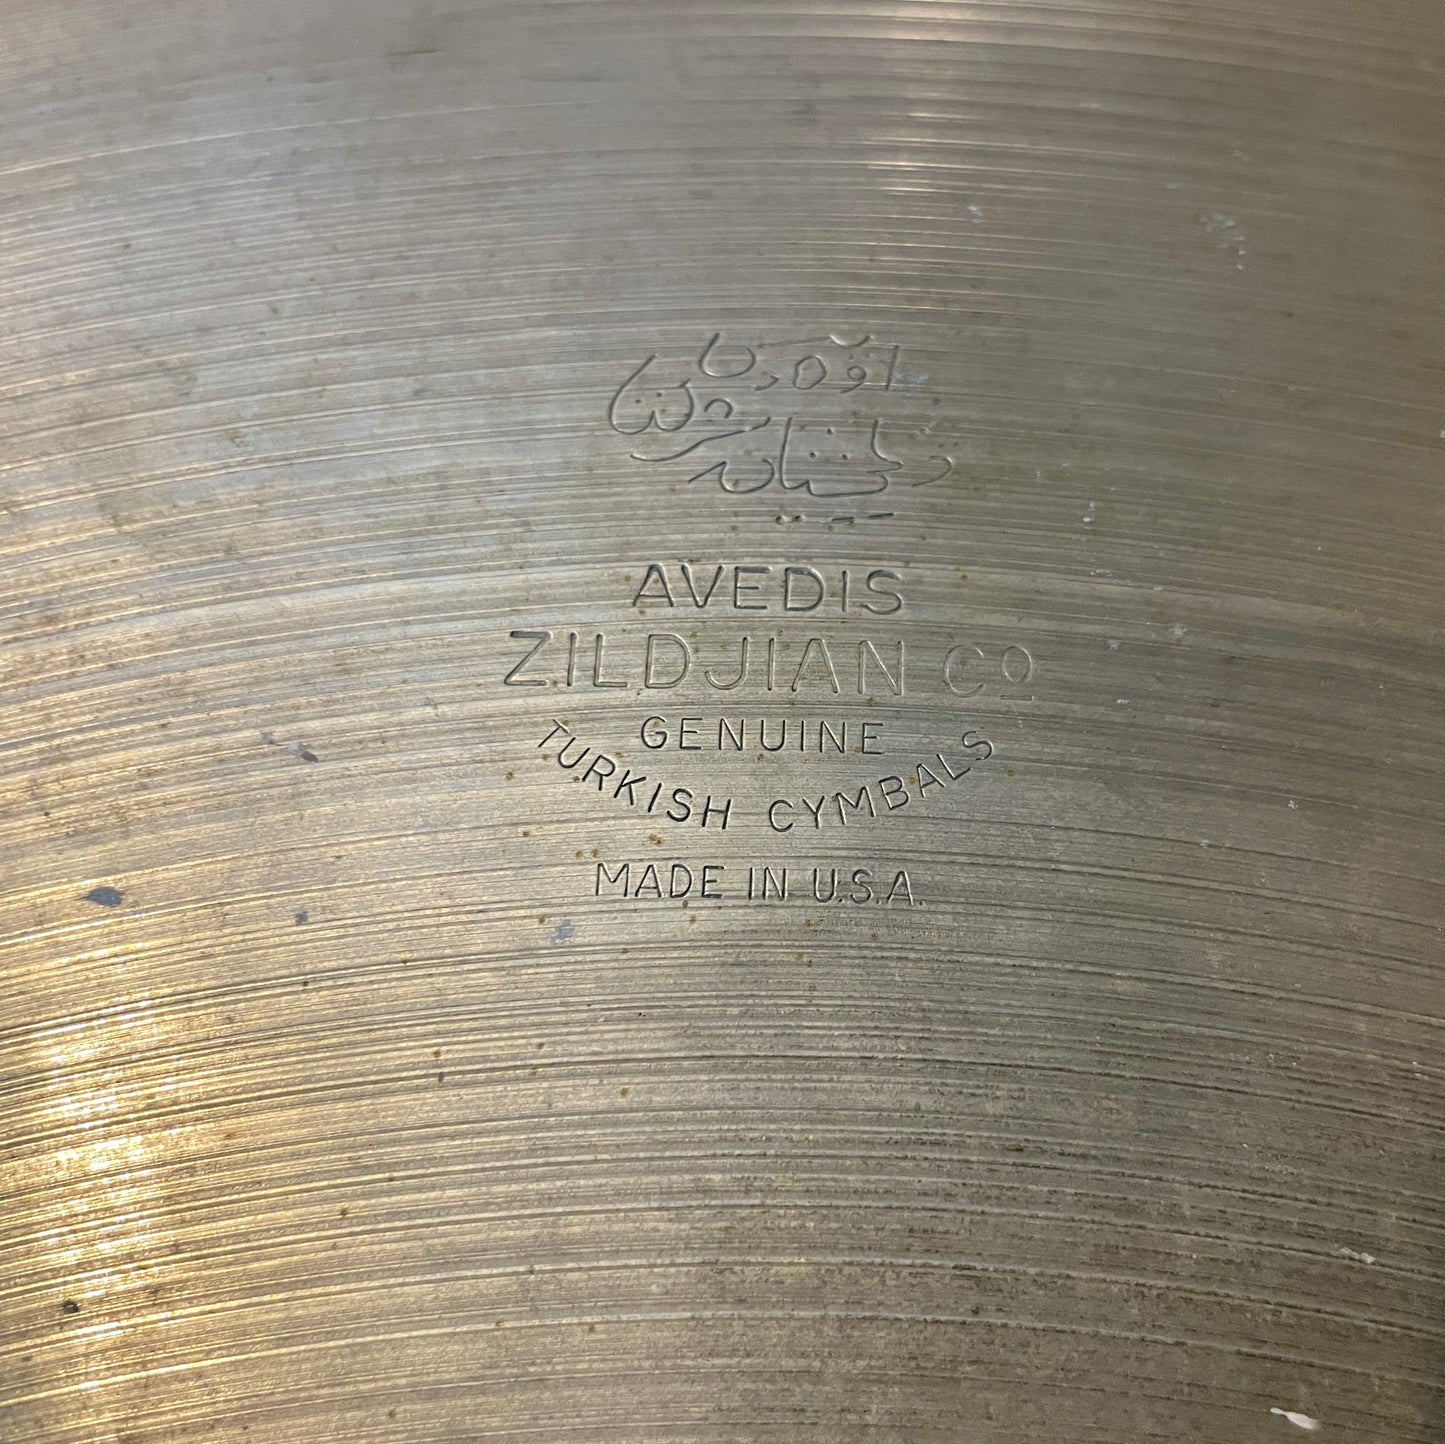 22" Zildjian A 1950s Ride Cymbal 2780g #725 *Video Demo*